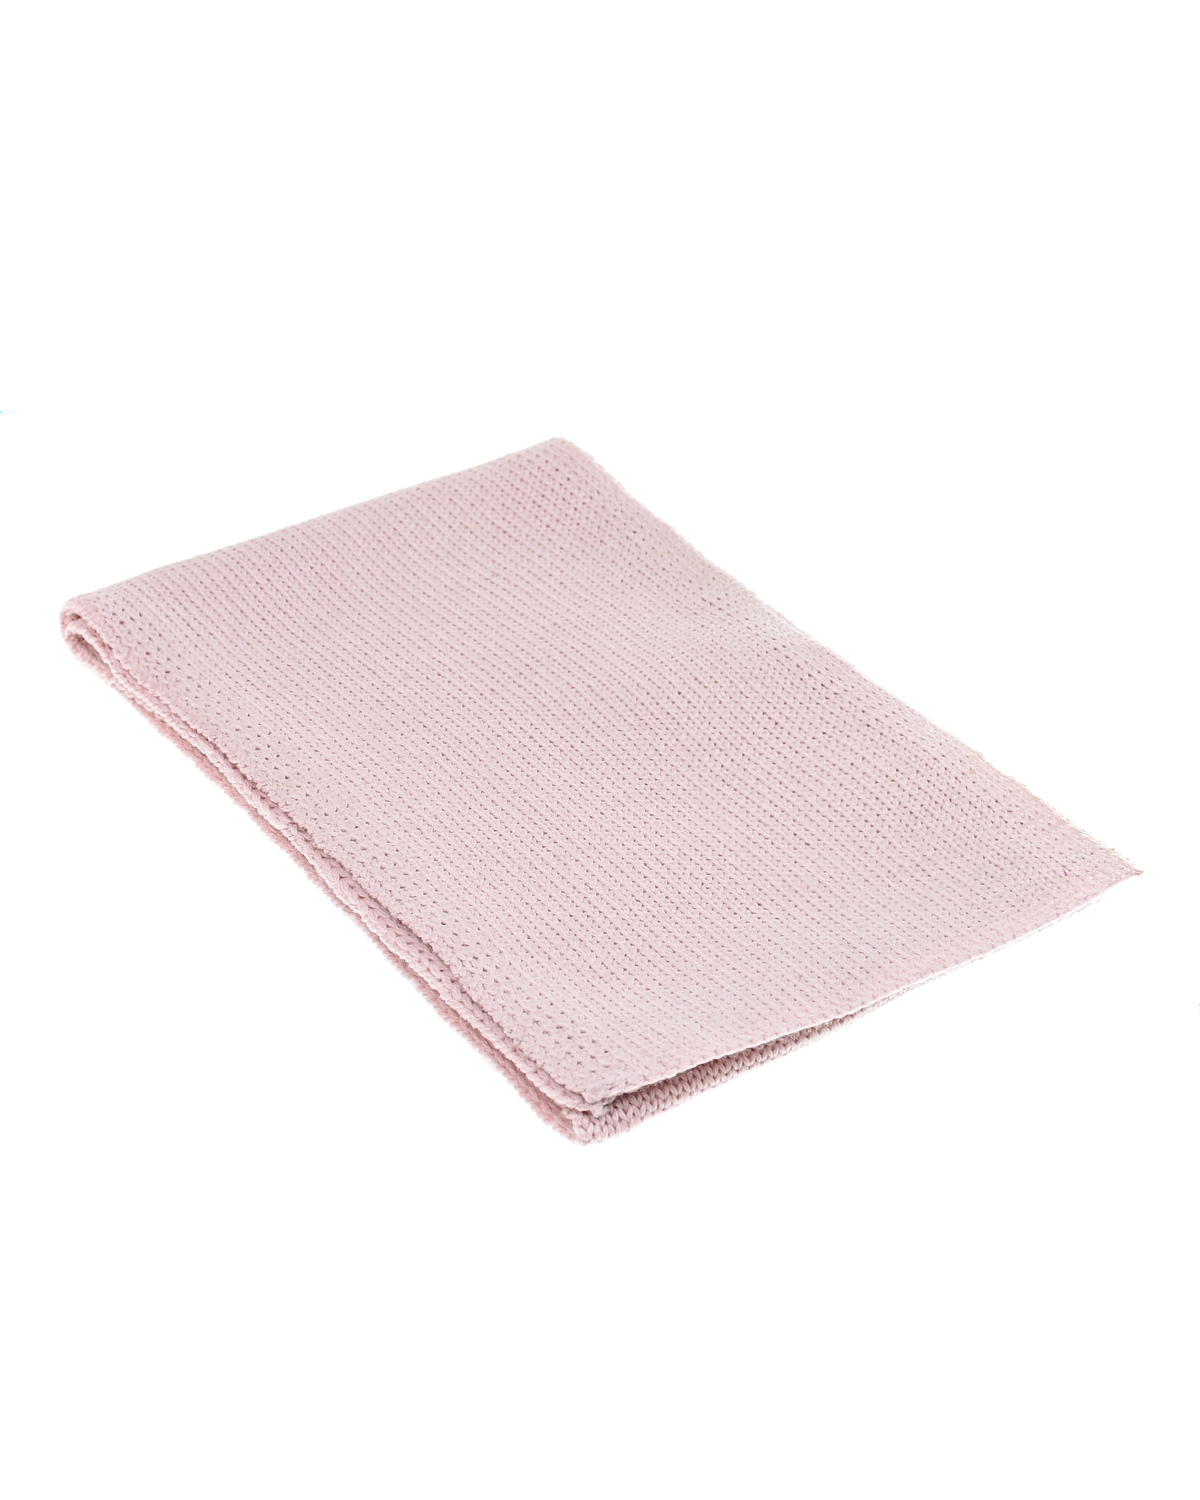 Розовый шарф из шерсти Catya детский, размер unica